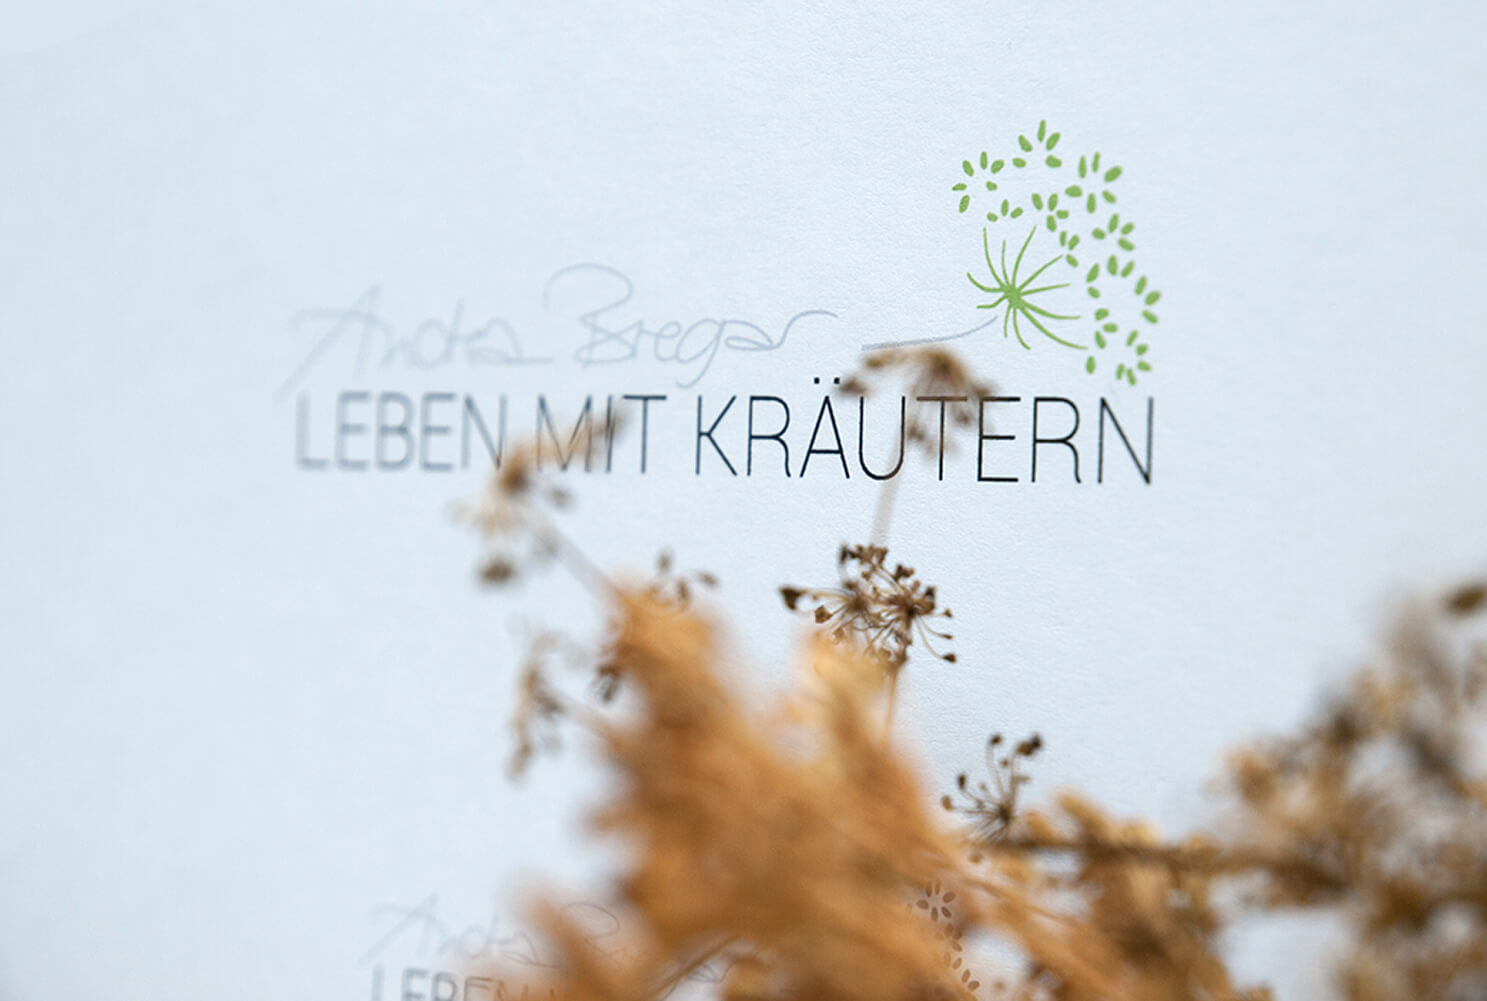 Andrea bregar, Leben mit Kräutern, Basislinie, Logo, Kreation, Werbelinie, Corporate Design, Gutschein